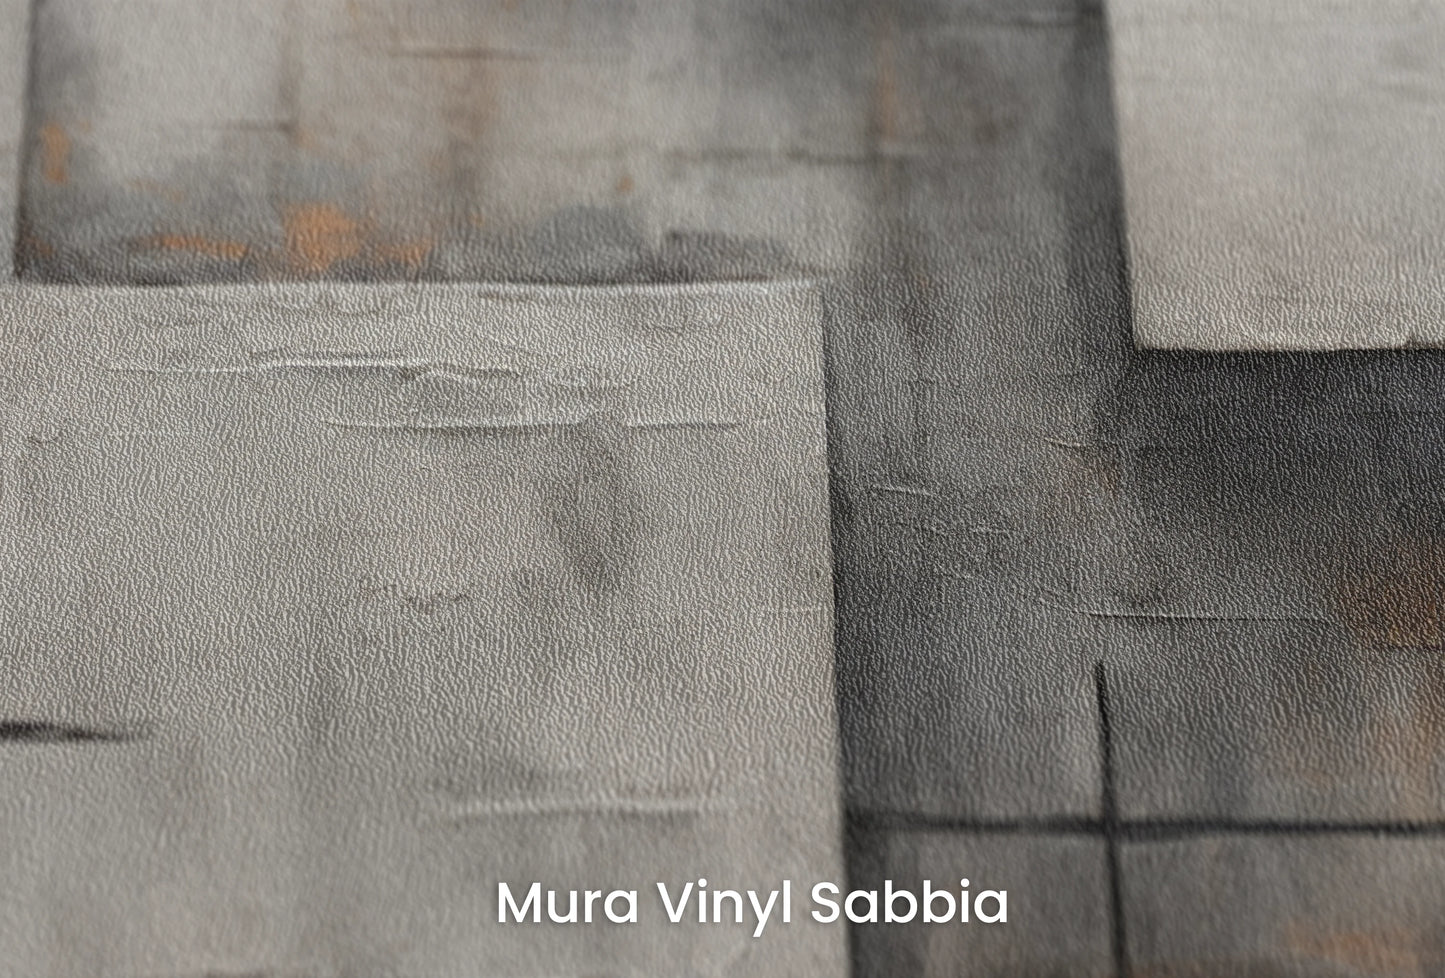 Zbliżenie na artystyczną fototapetę o nazwie Abstract Grayscale na podłożu Mura Vinyl Sabbia struktura grubego ziarna piasku.